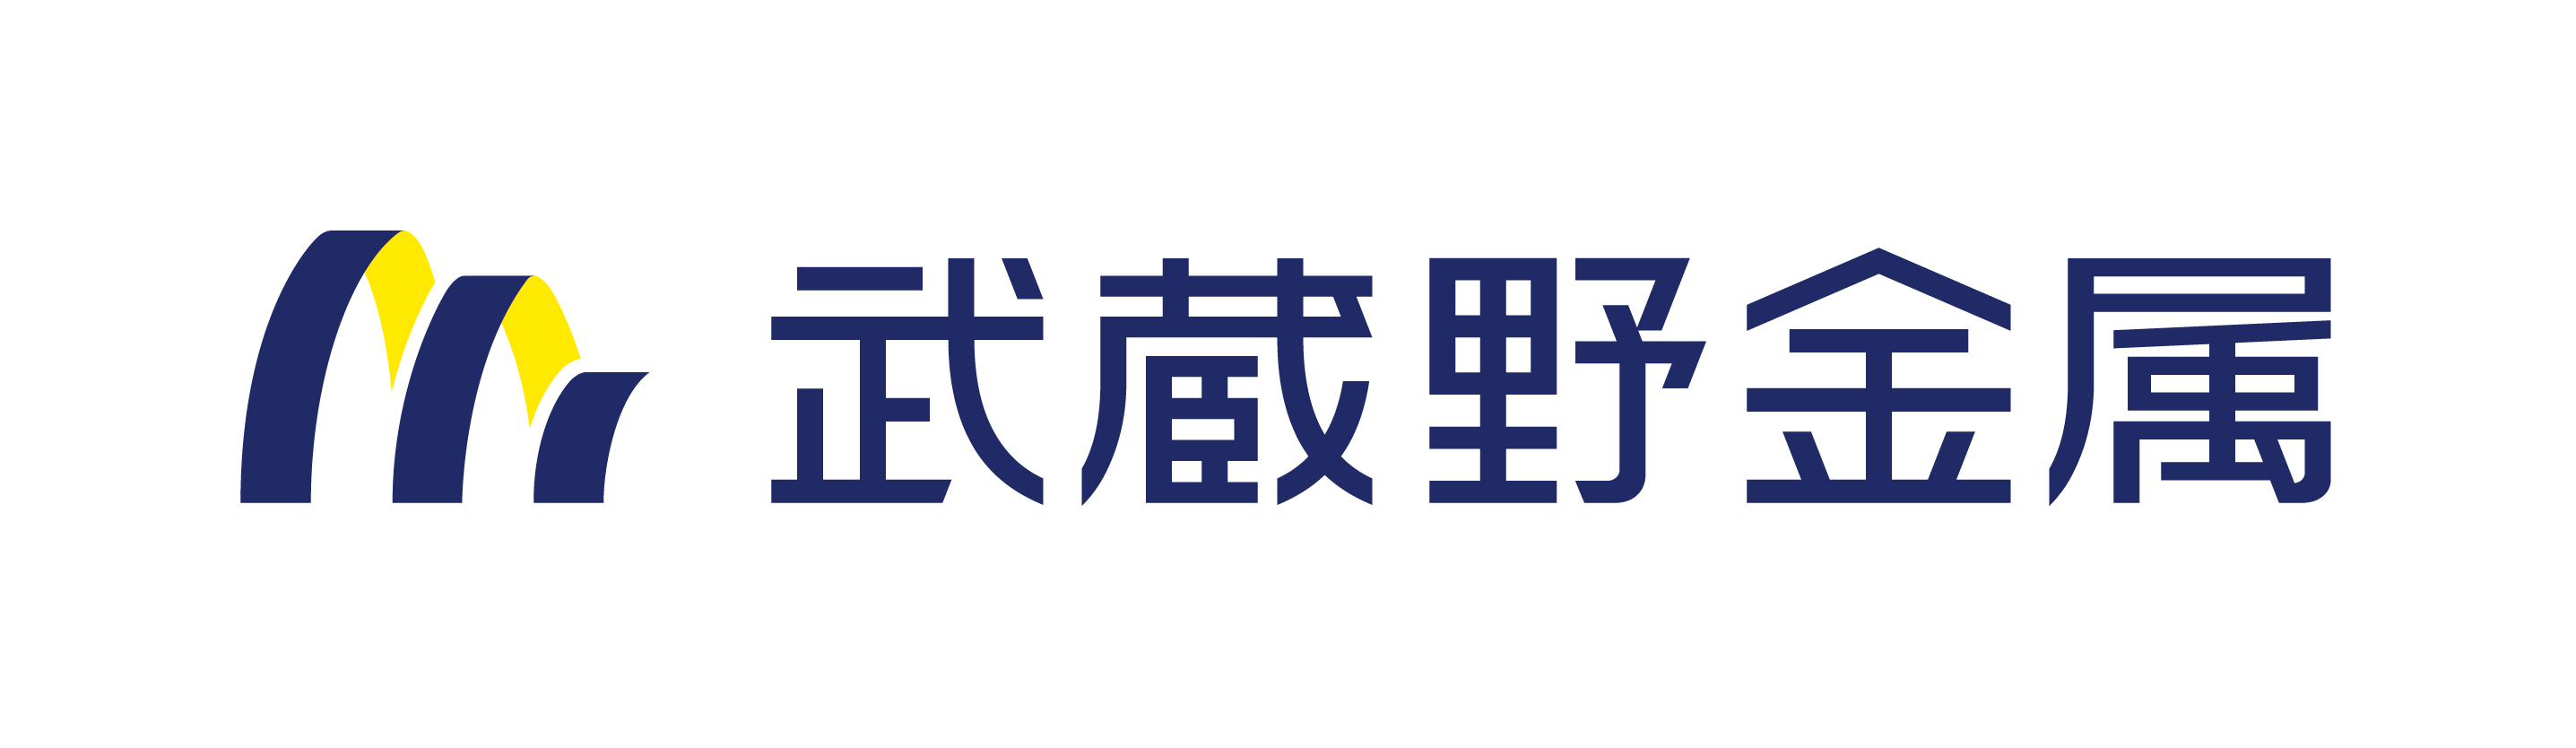 武蔵野金属株式会社